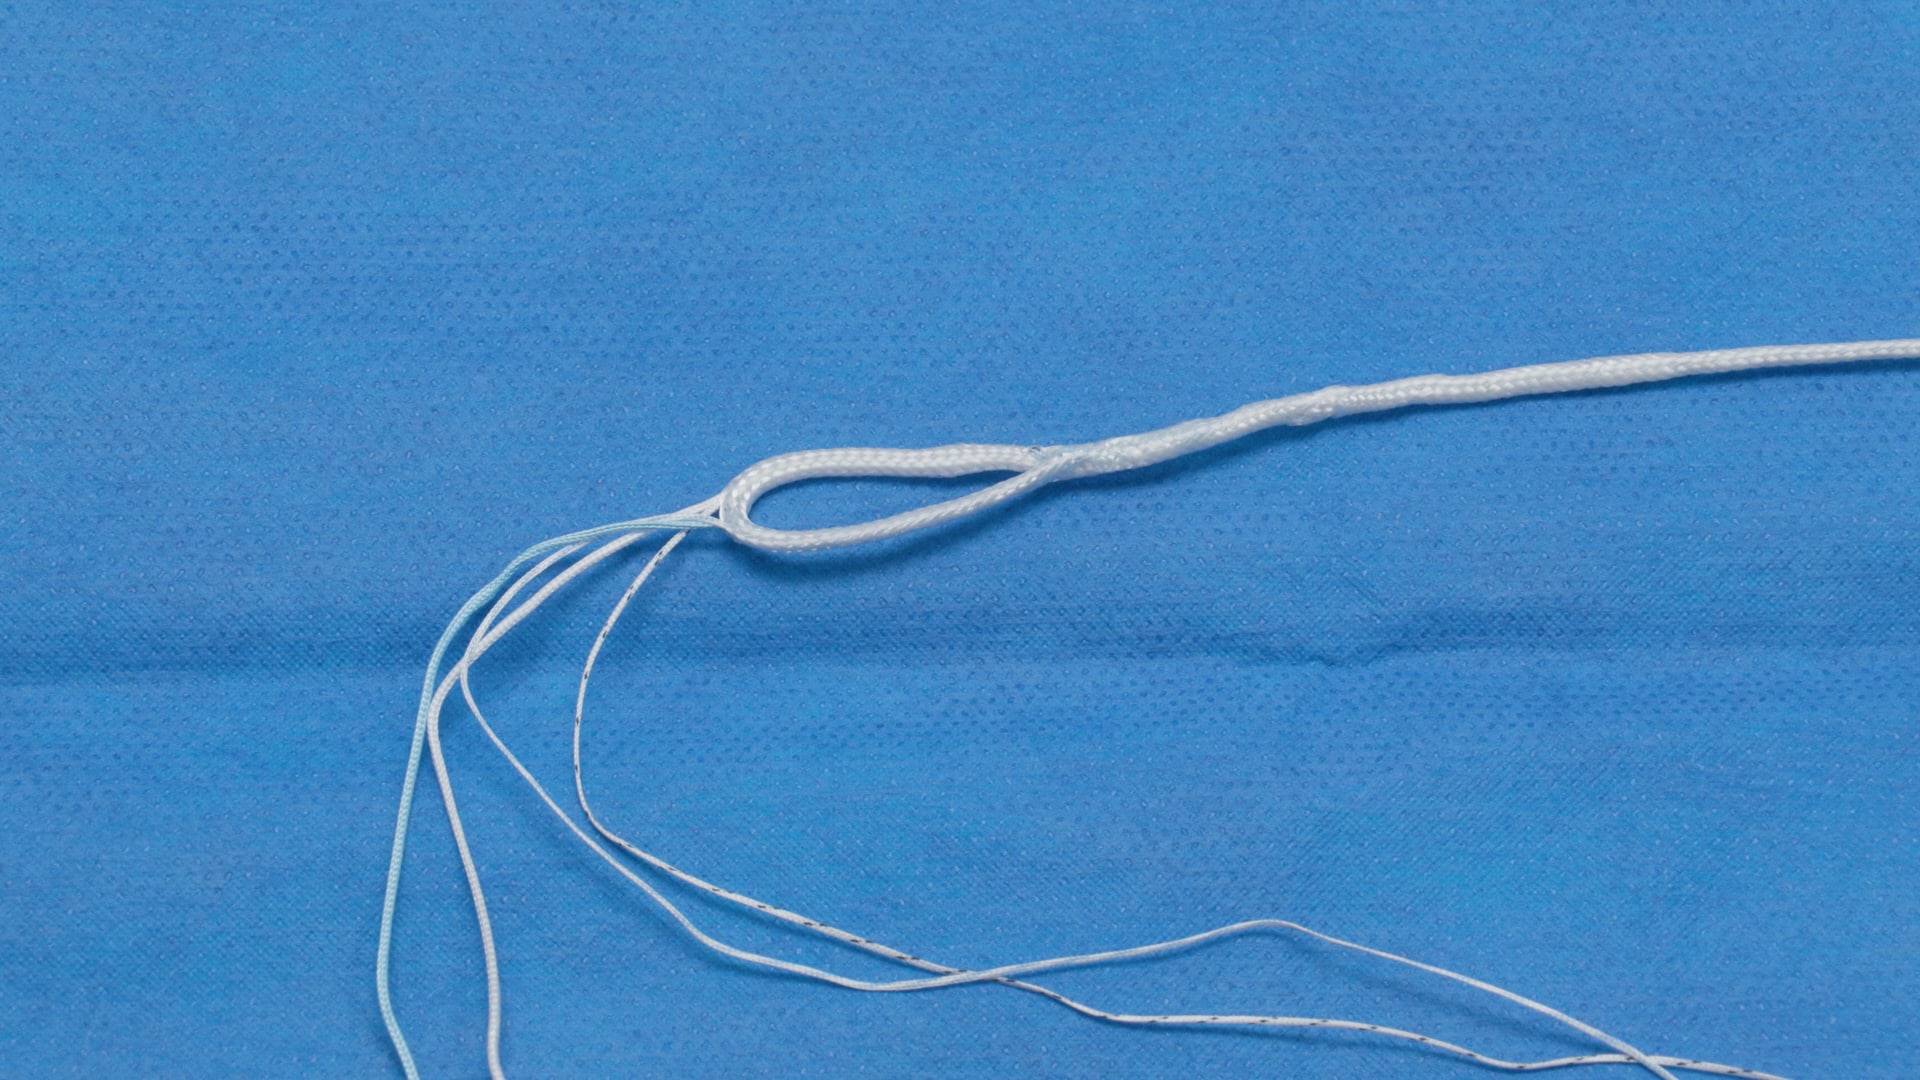 Meniscal Root Repair Using the SutureLoc™ Implant